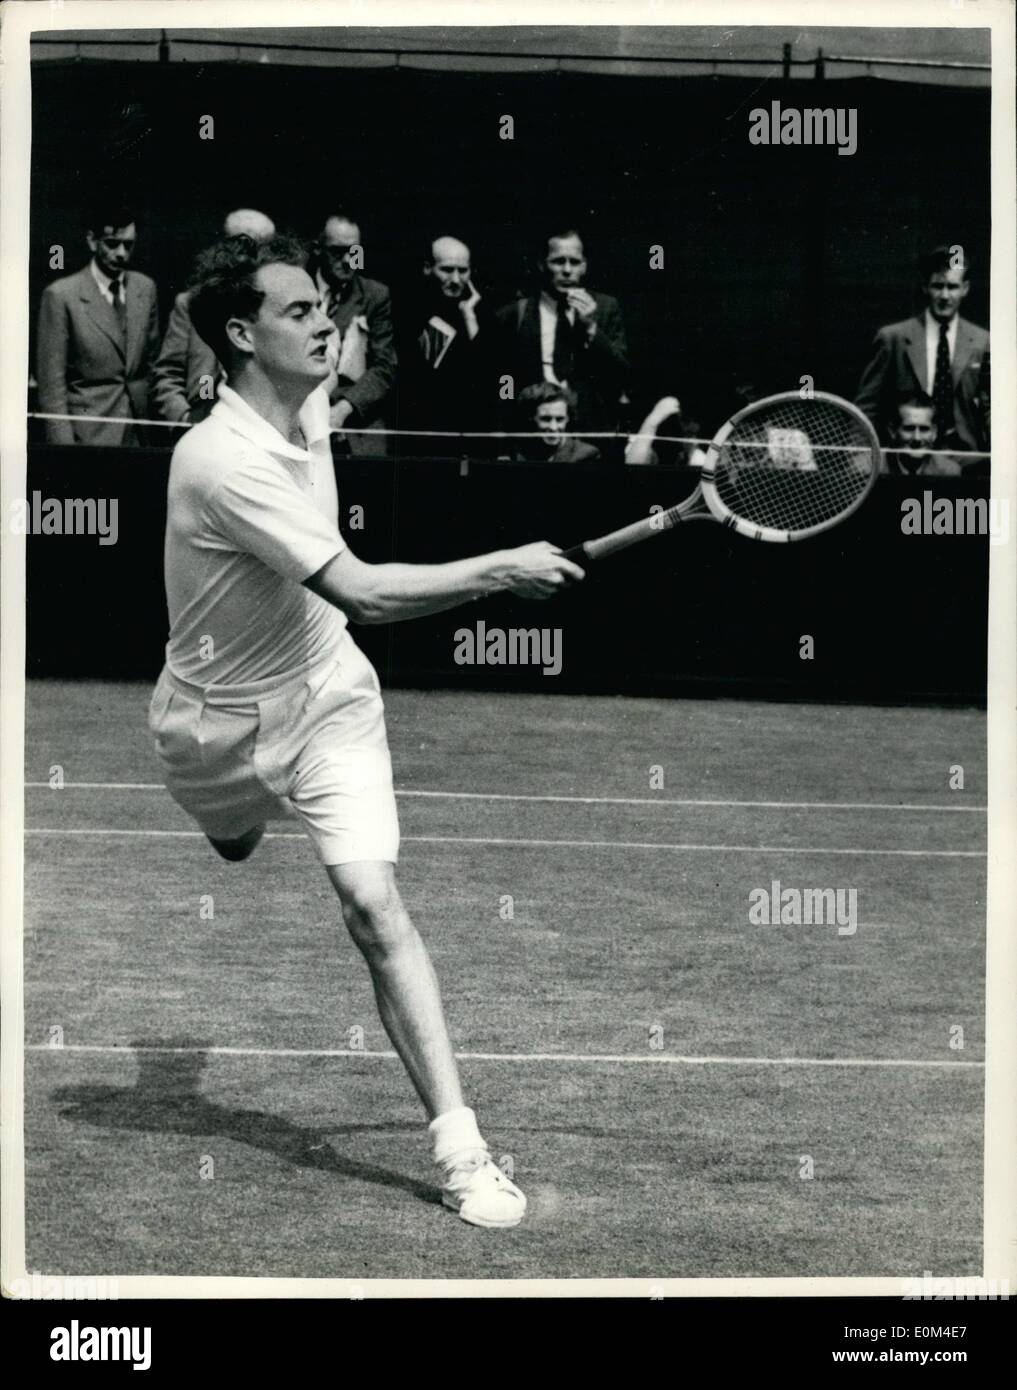 Giugno 24, 1953 - 24-6-53 Prato i campionati di tennis a Wimbledon. La foto mostra: il giovane giocatore britannico, Ken Wilson, in un Foto Stock